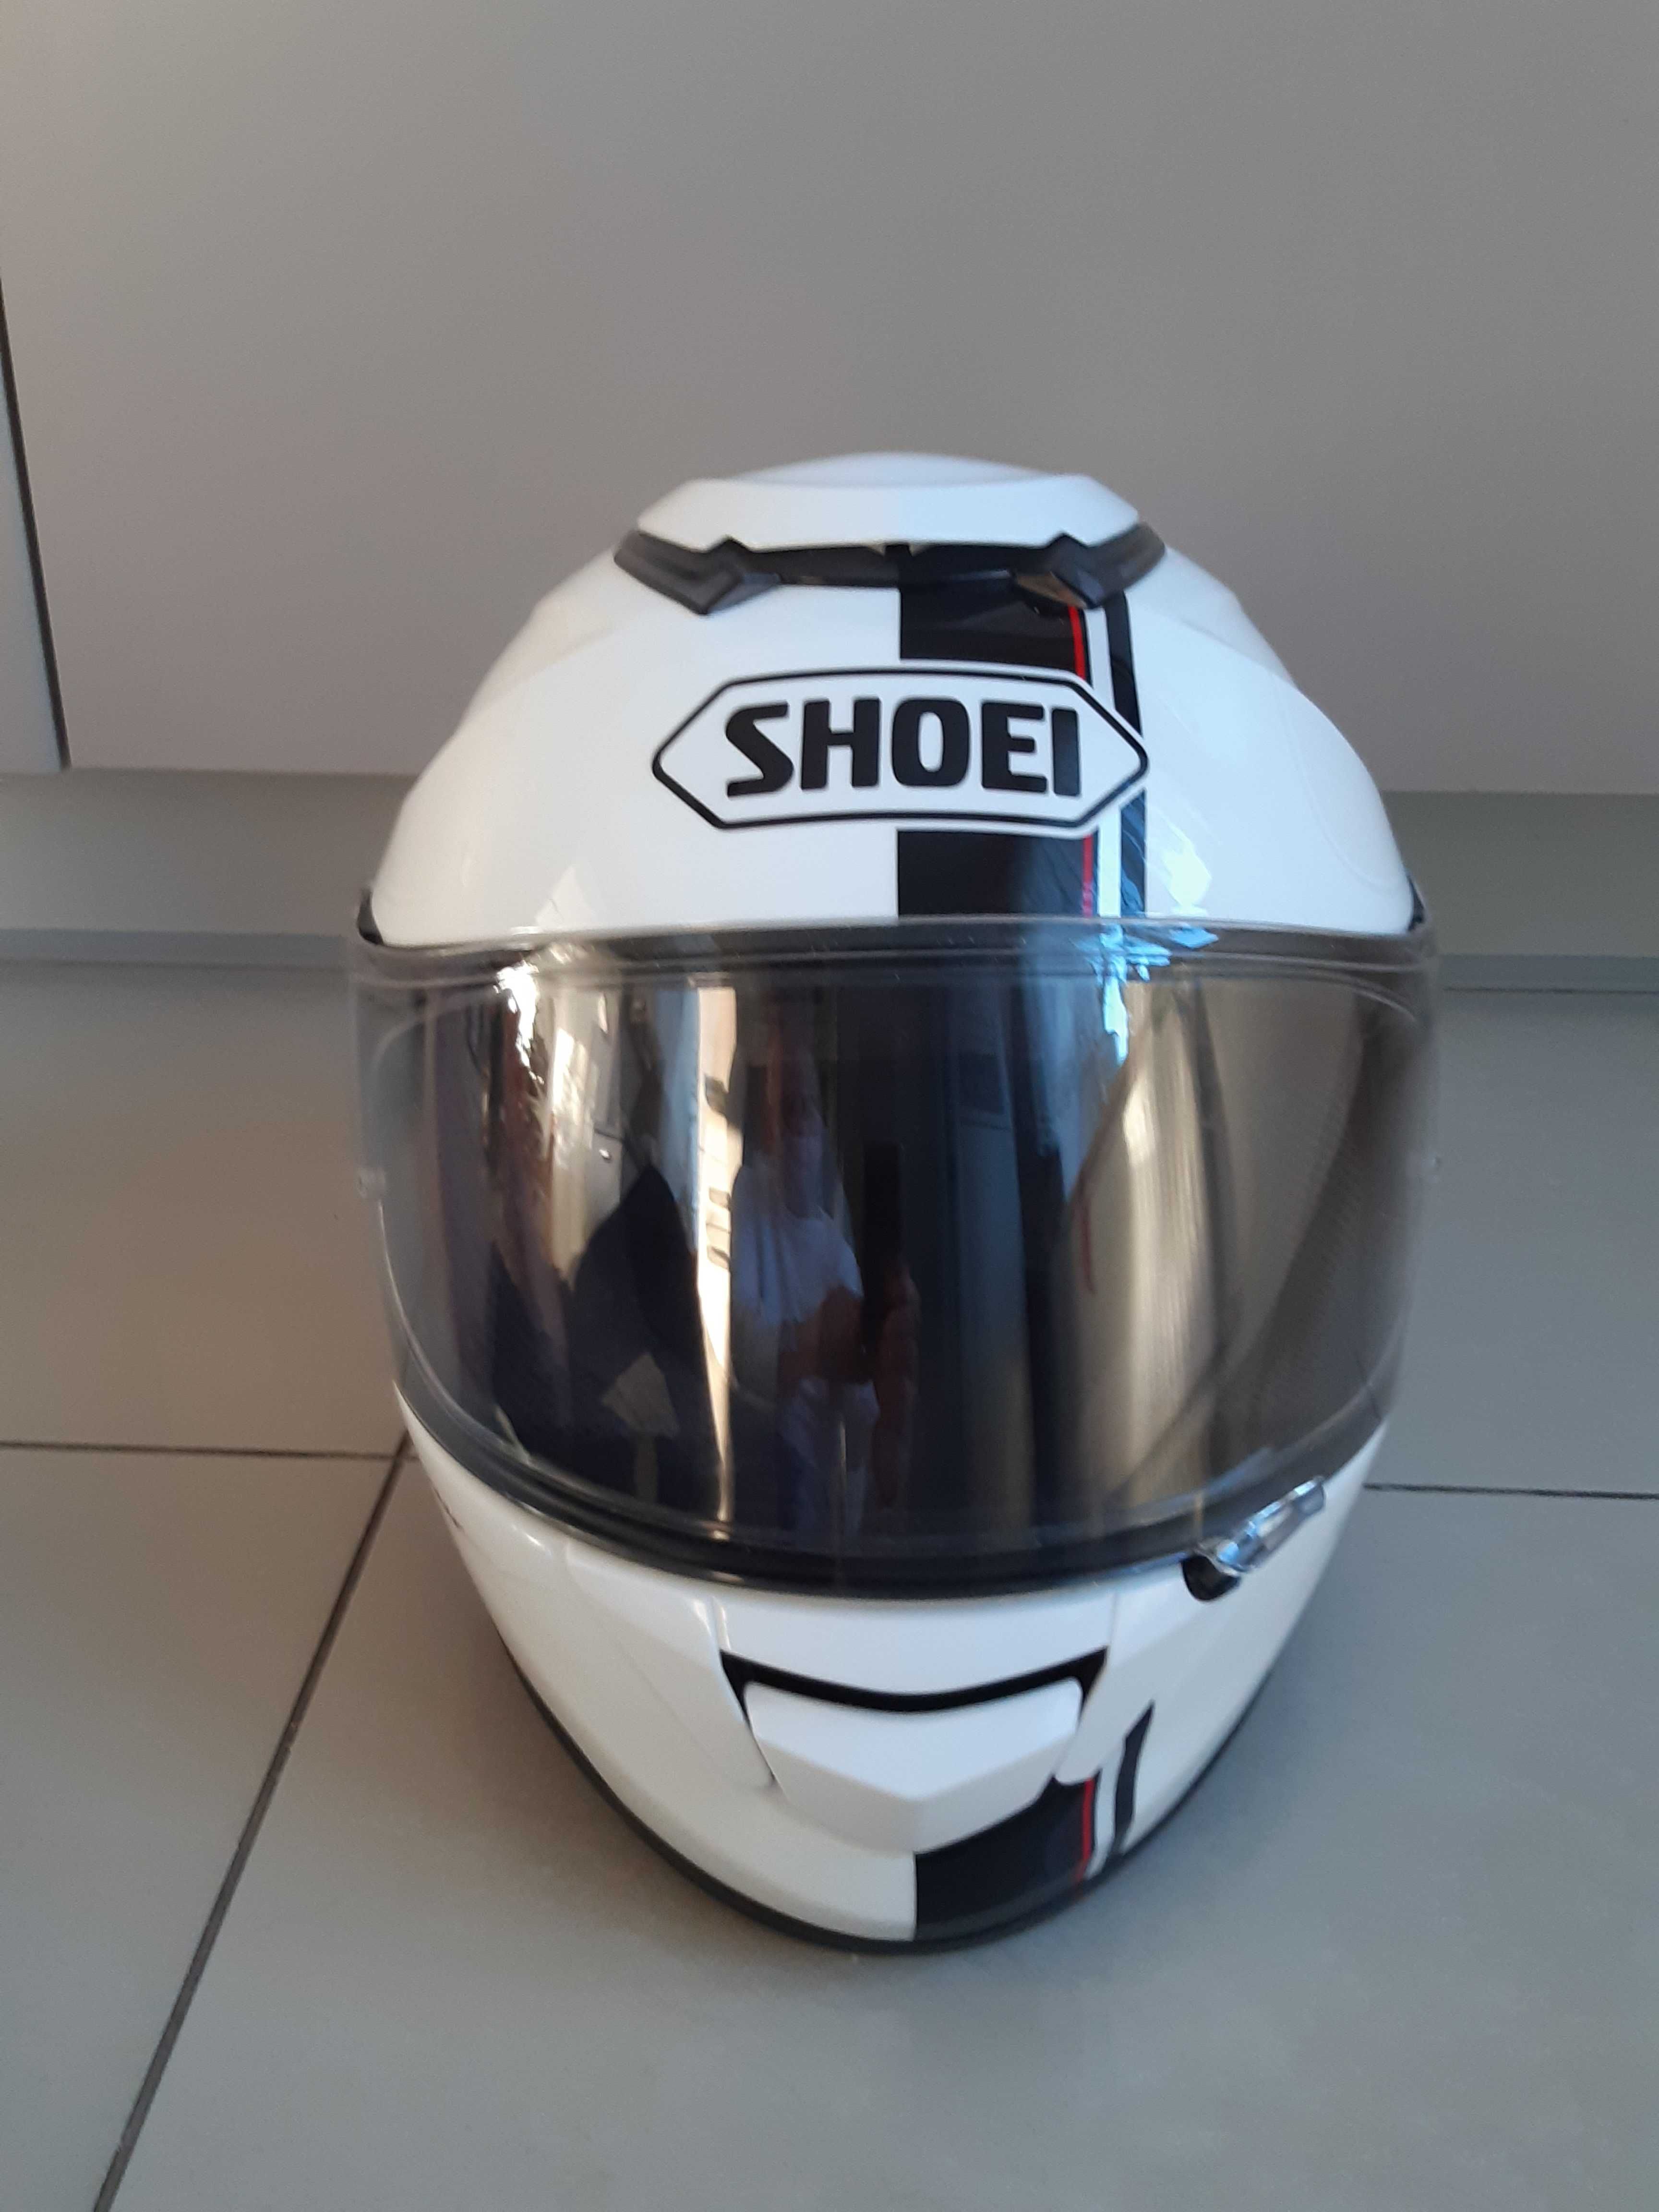 SHOEI GTR - nowy kask, Shoei marka japonska, 100% oryginal